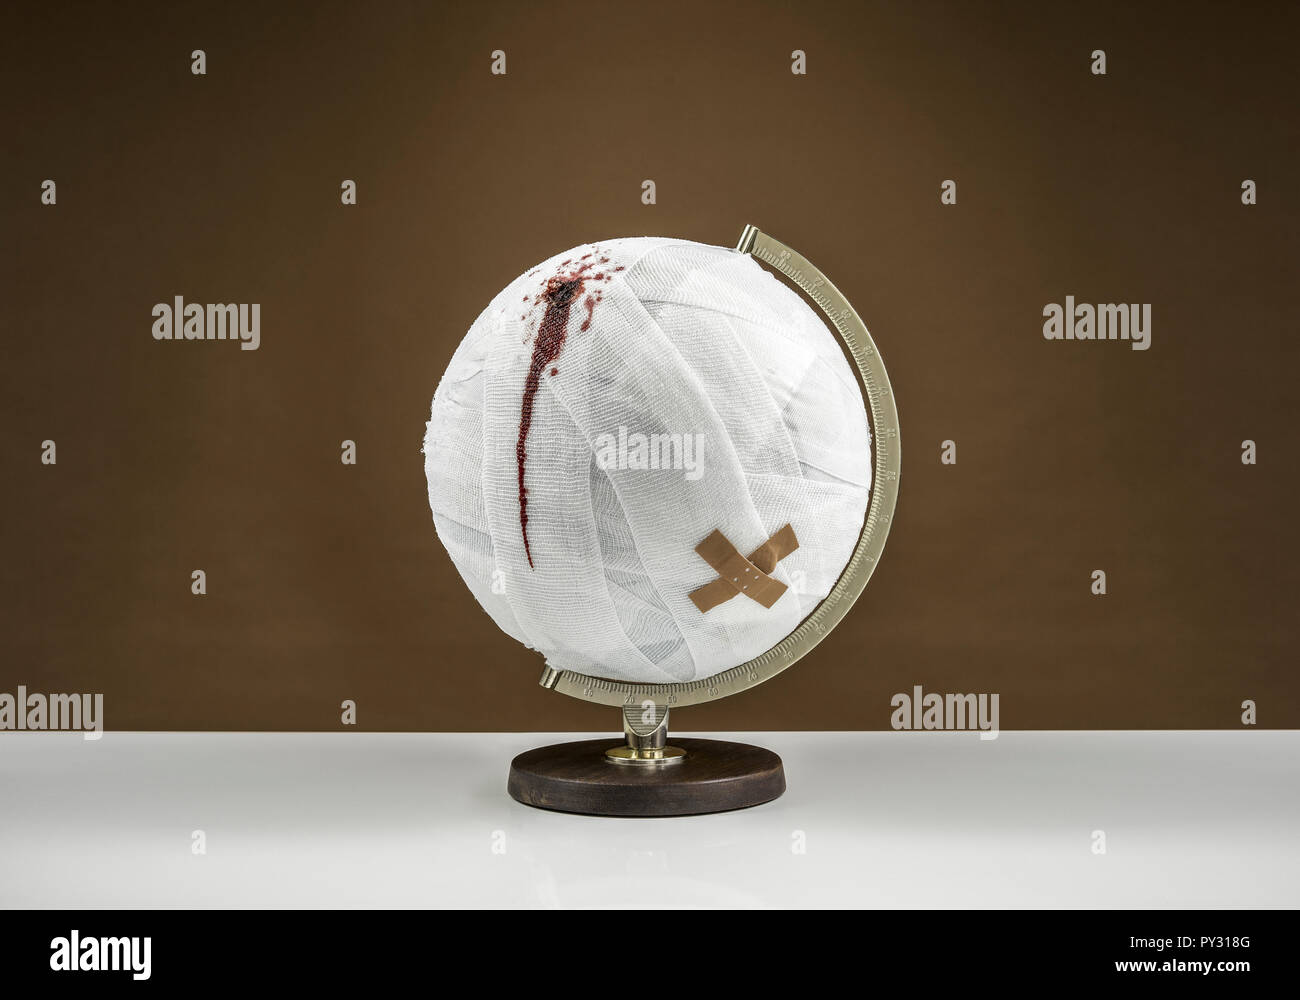 Globus mit Verband und Verletzung, Symbolbild Foto de stock